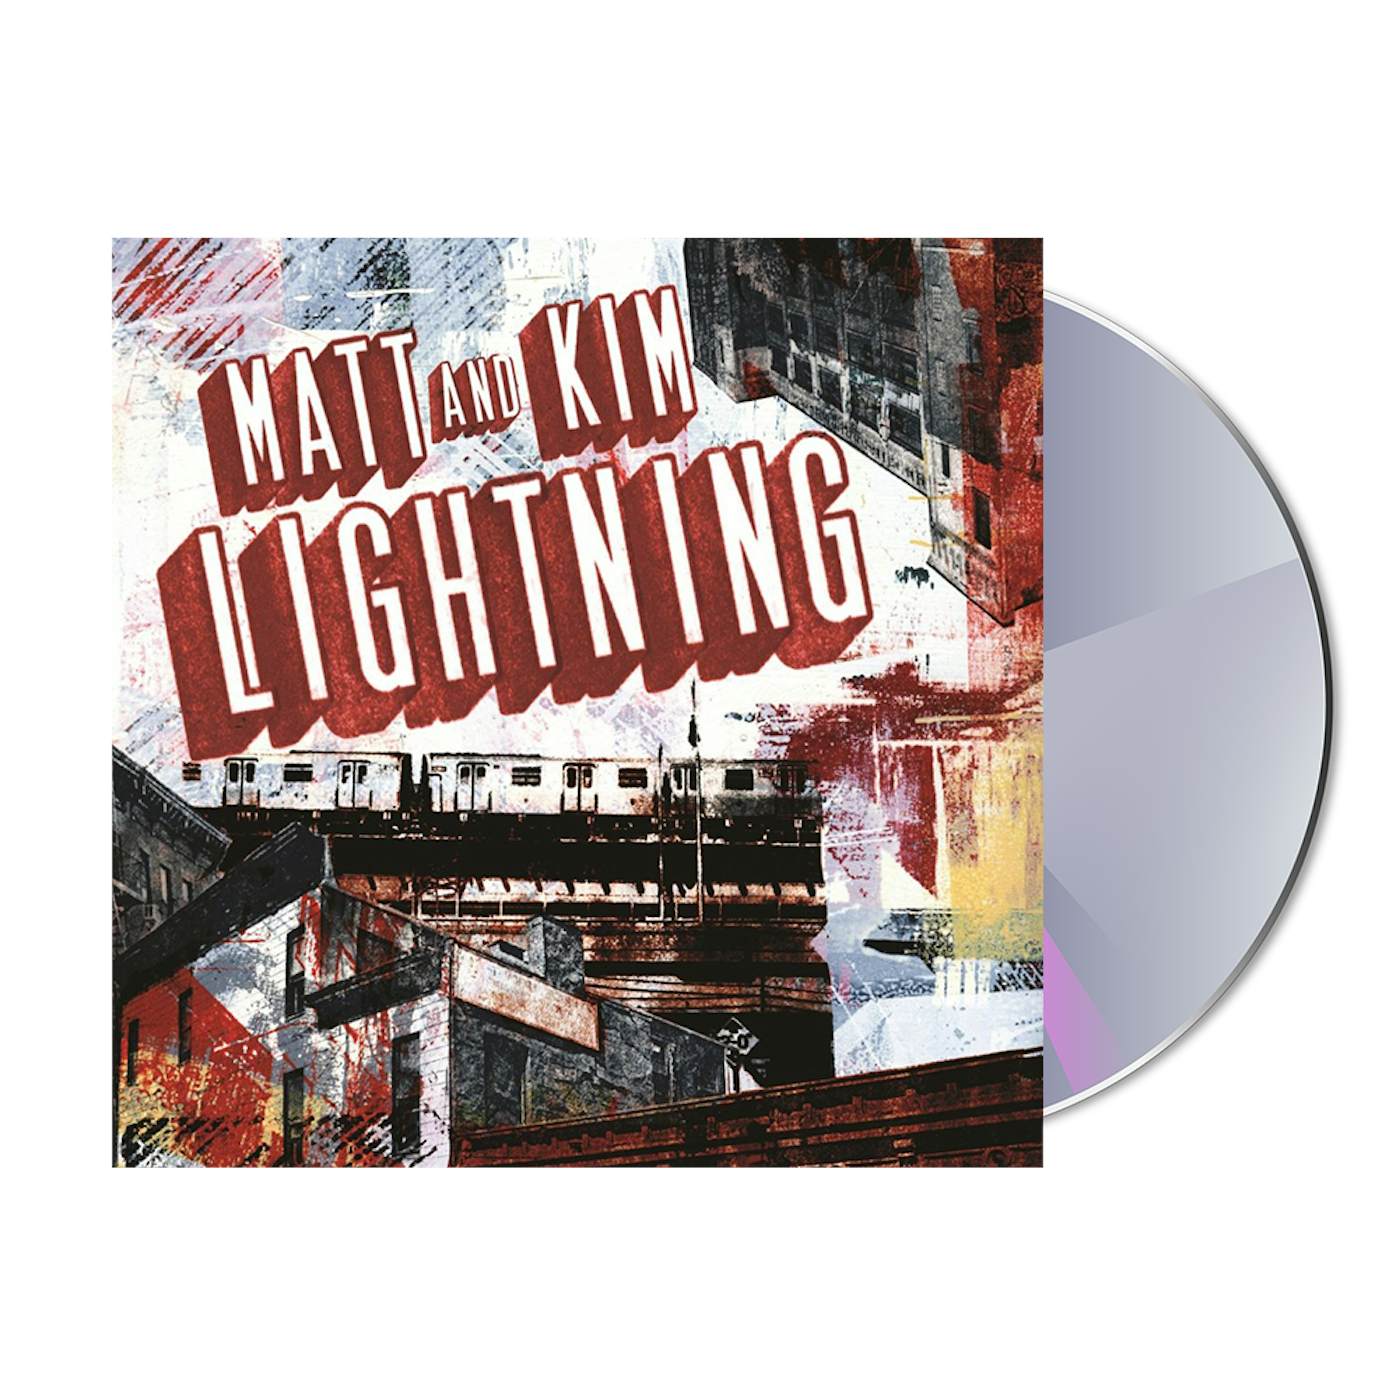 Matt and Kim Lightning CD